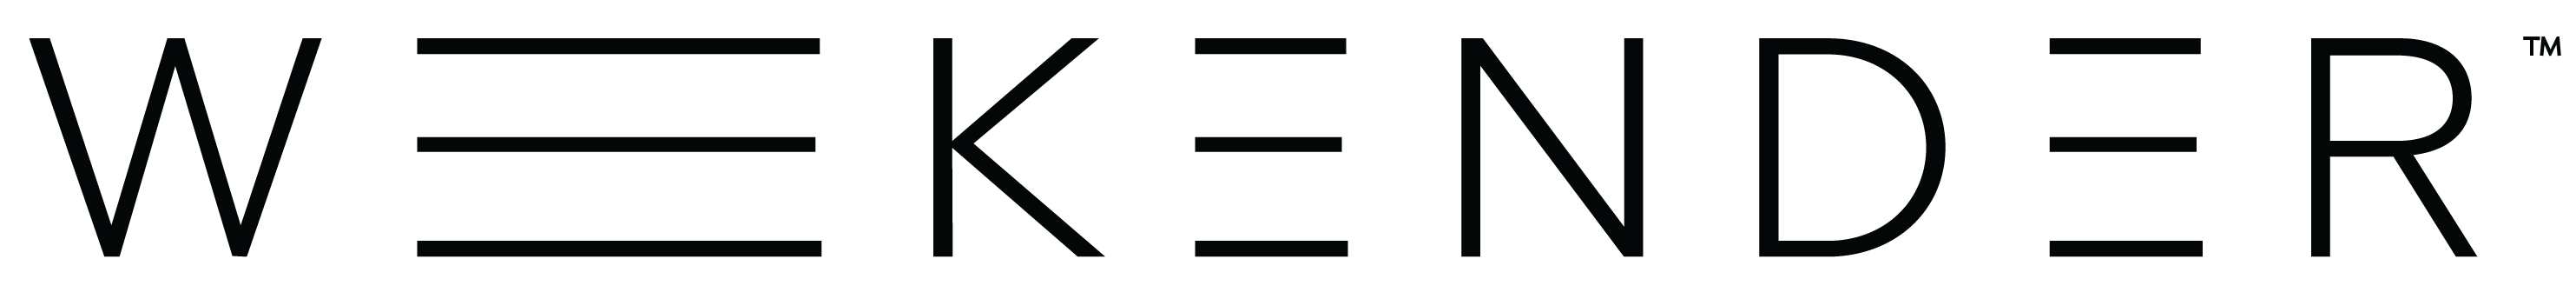 Weekender-Logo-Black-02